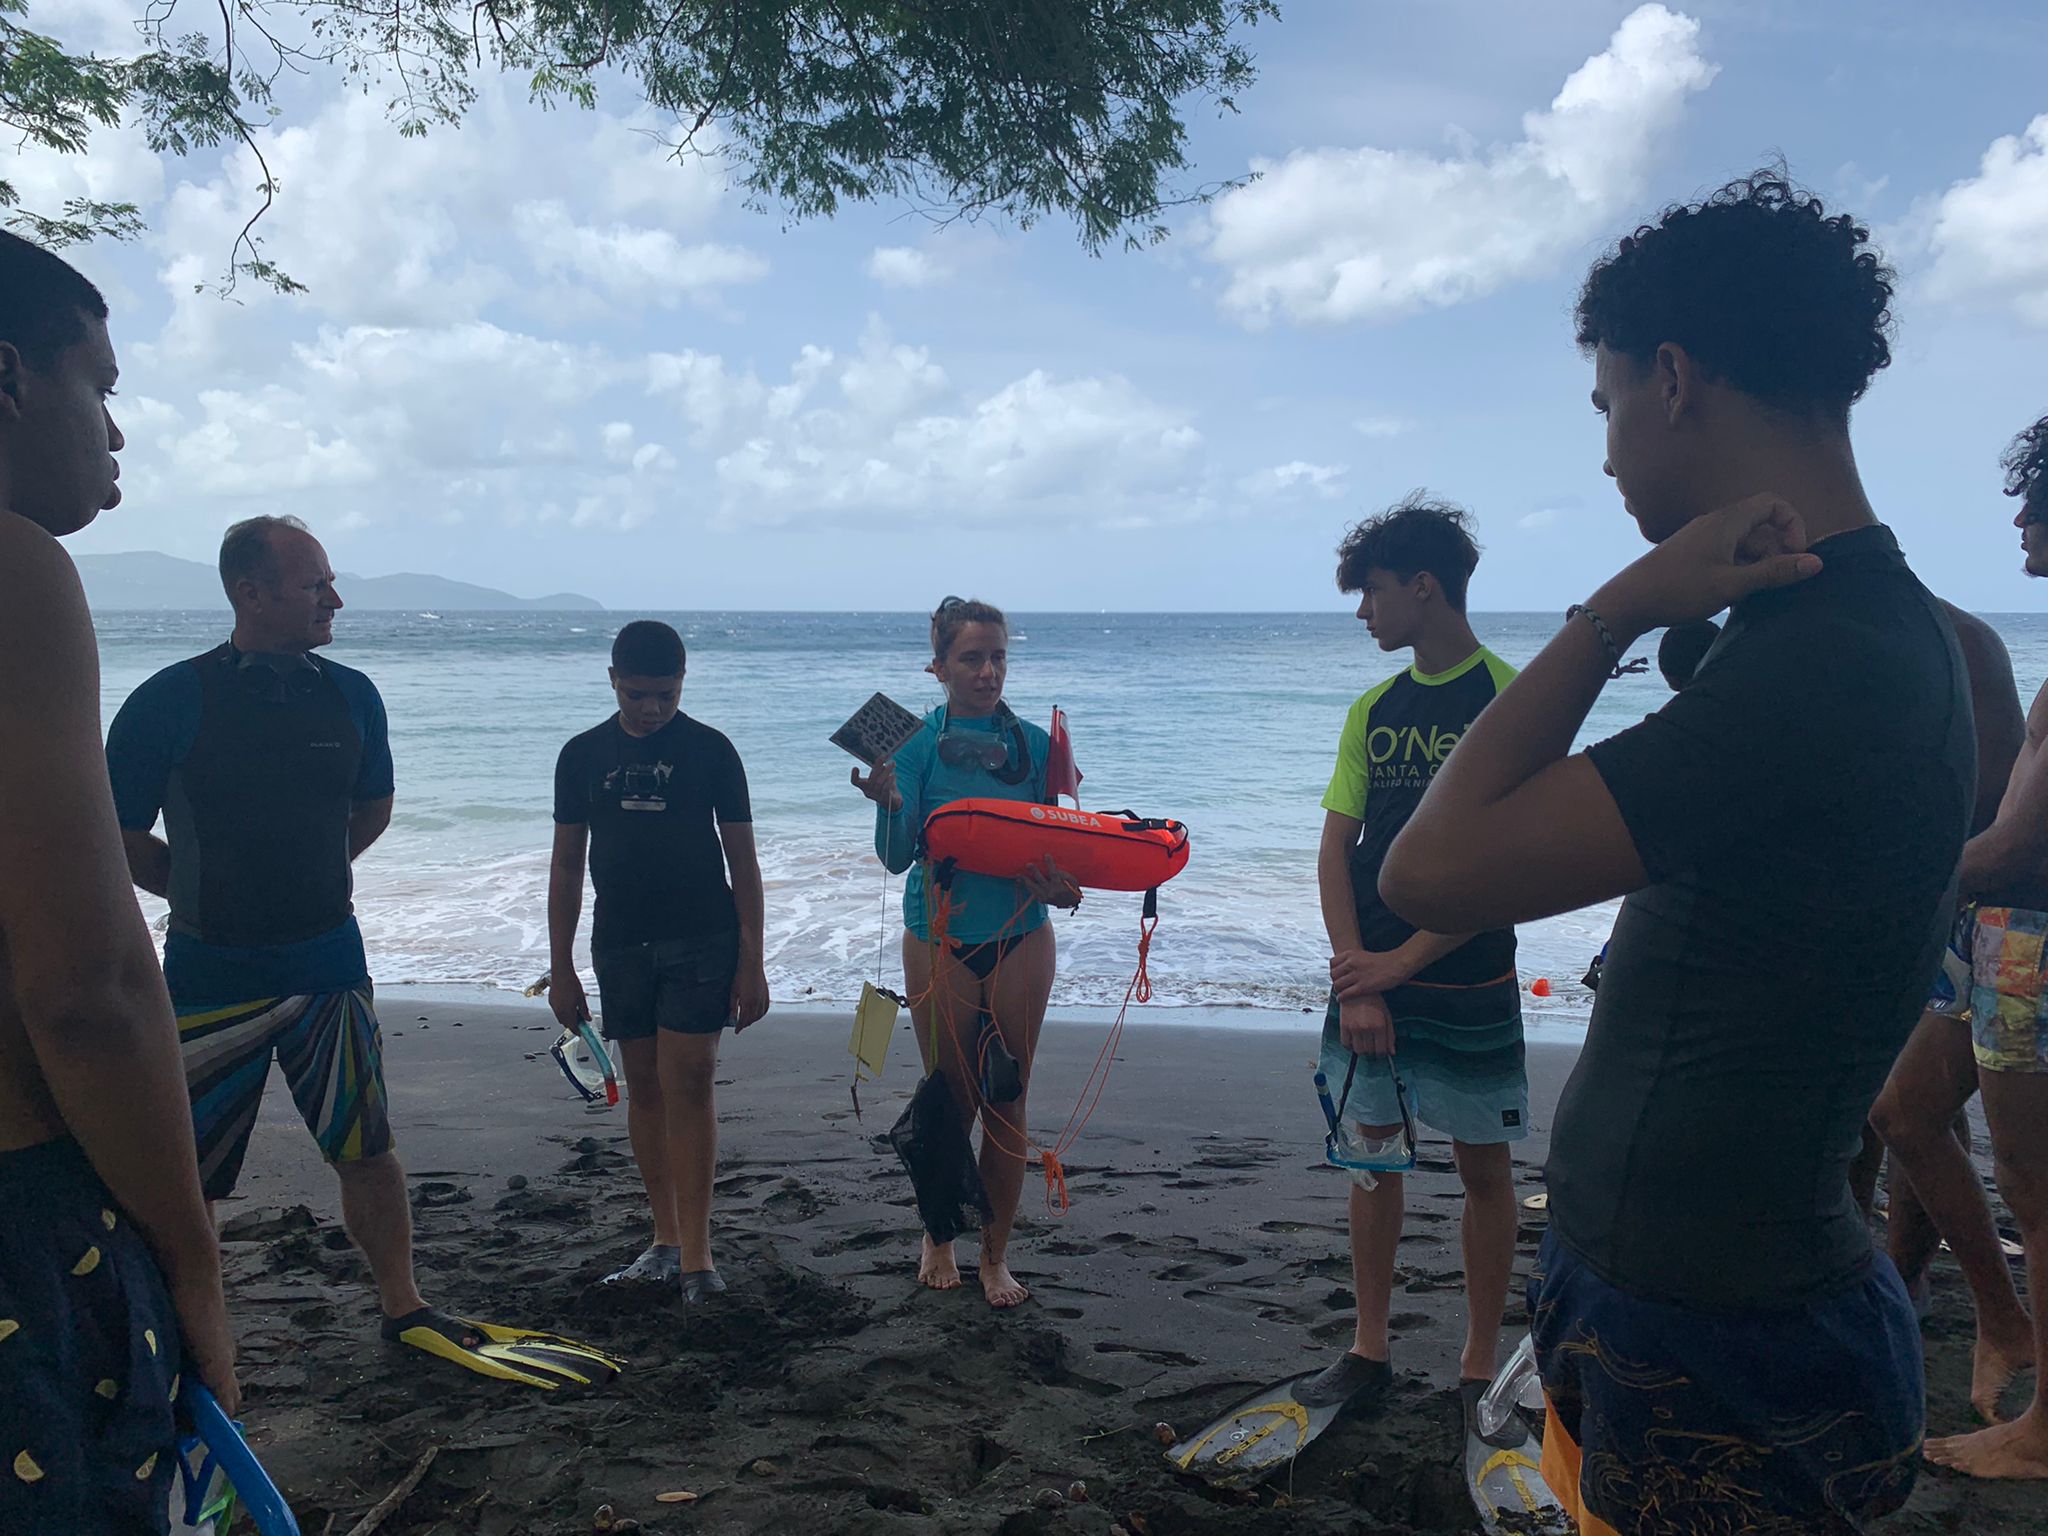     « Jounen vakans o péyi » : des jeunes à l'assaut de leur île

